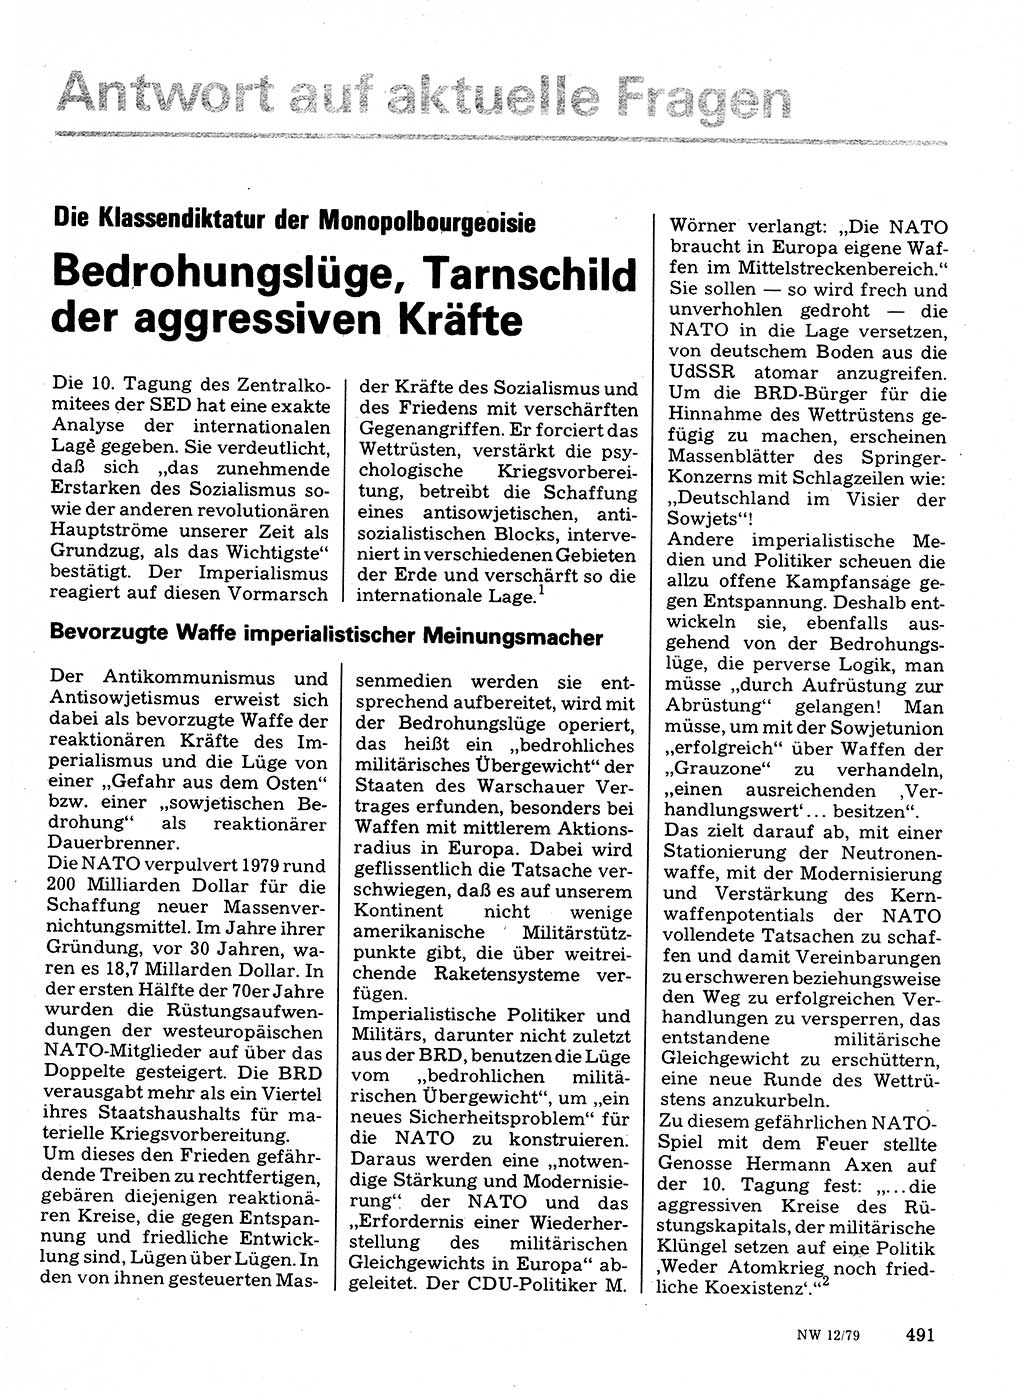 Neuer Weg (NW), Organ des Zentralkomitees (ZK) der SED (Sozialistische Einheitspartei Deutschlands) für Fragen des Parteilebens, 34. Jahrgang [Deutsche Demokratische Republik (DDR)] 1979, Seite 491 (NW ZK SED DDR 1979, S. 491)